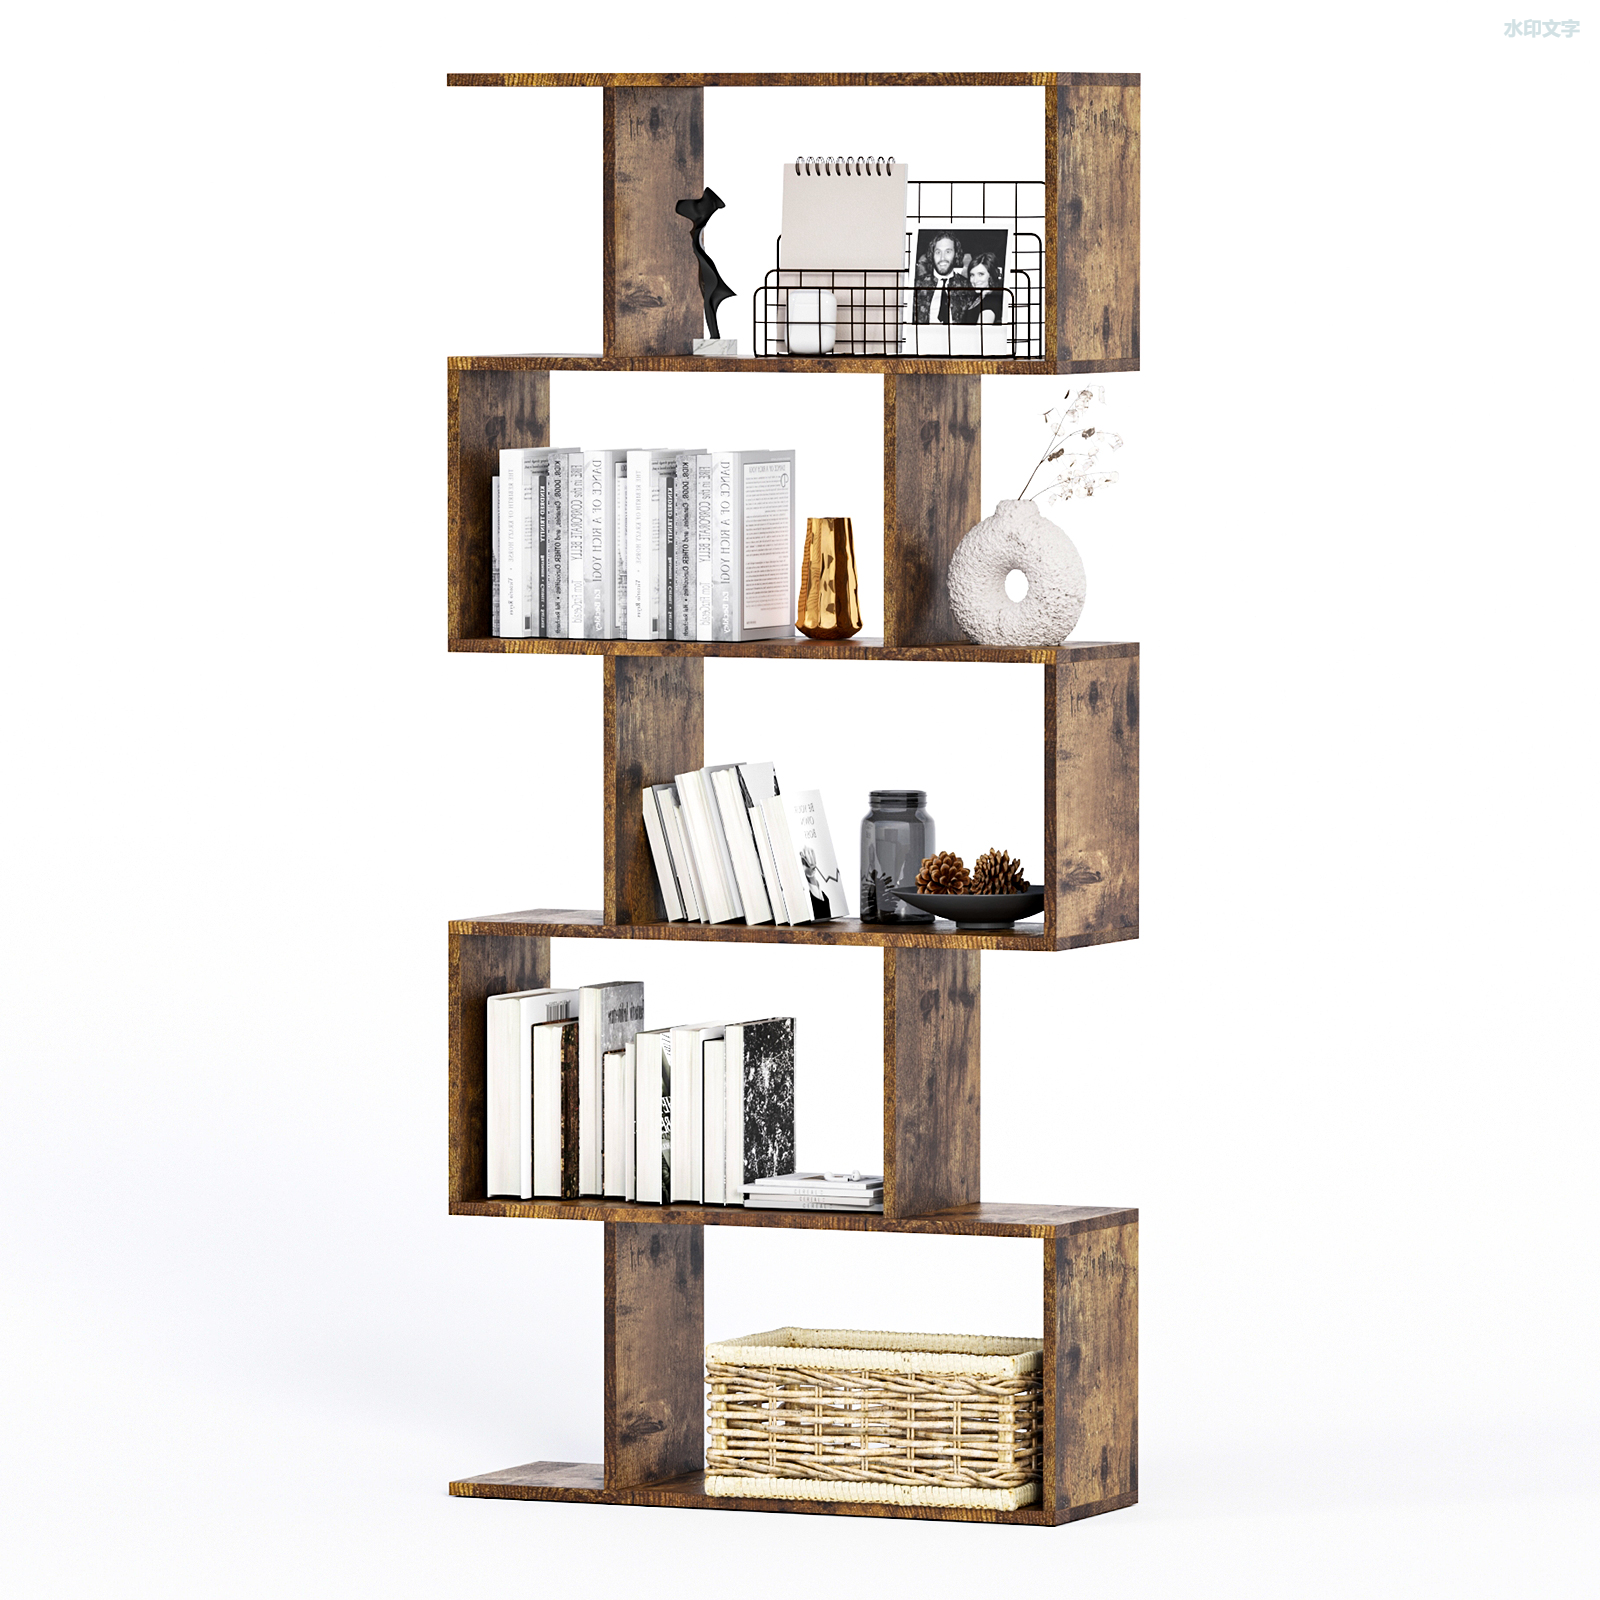 Caja de libro moderna simple de Styl del estante de libros de los muebles del sistema de dormitorio del sitio de madera de alta calidad al por mayor